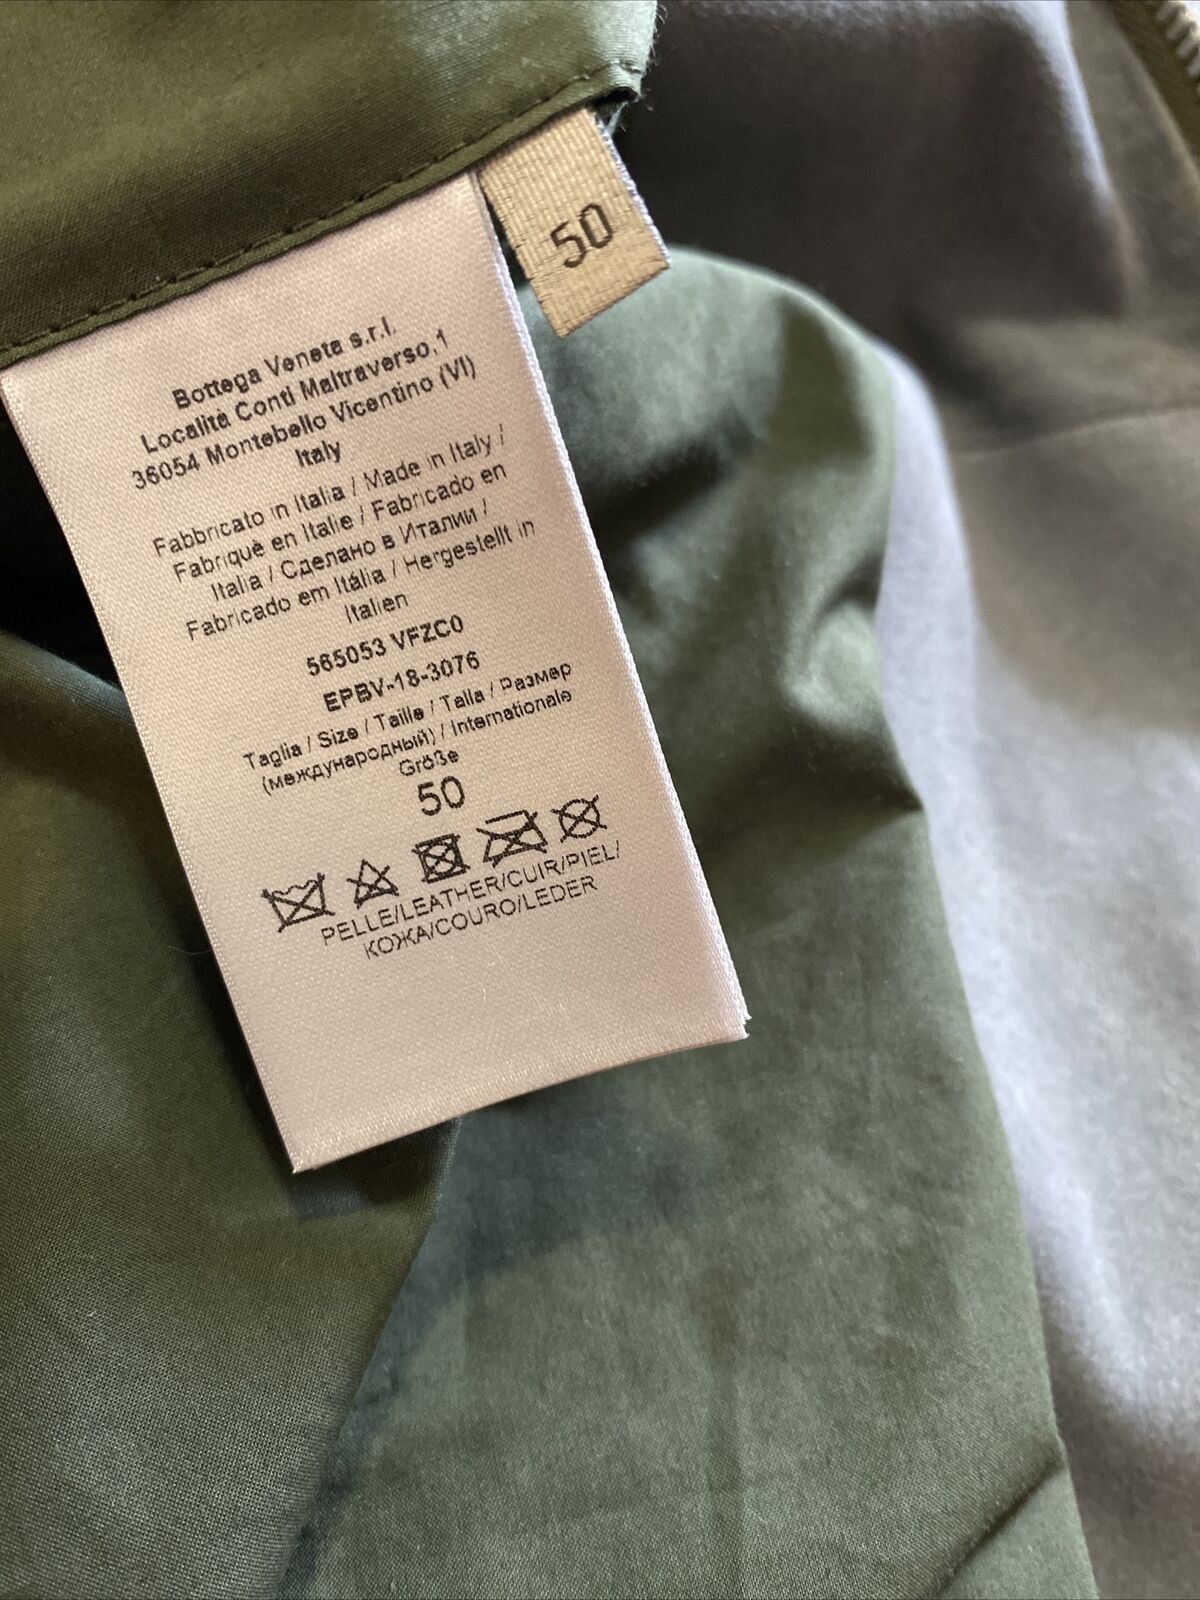 Новая мужская замшевая куртка Bottega Veneta за 4400 долларов США (50 евро), Италия